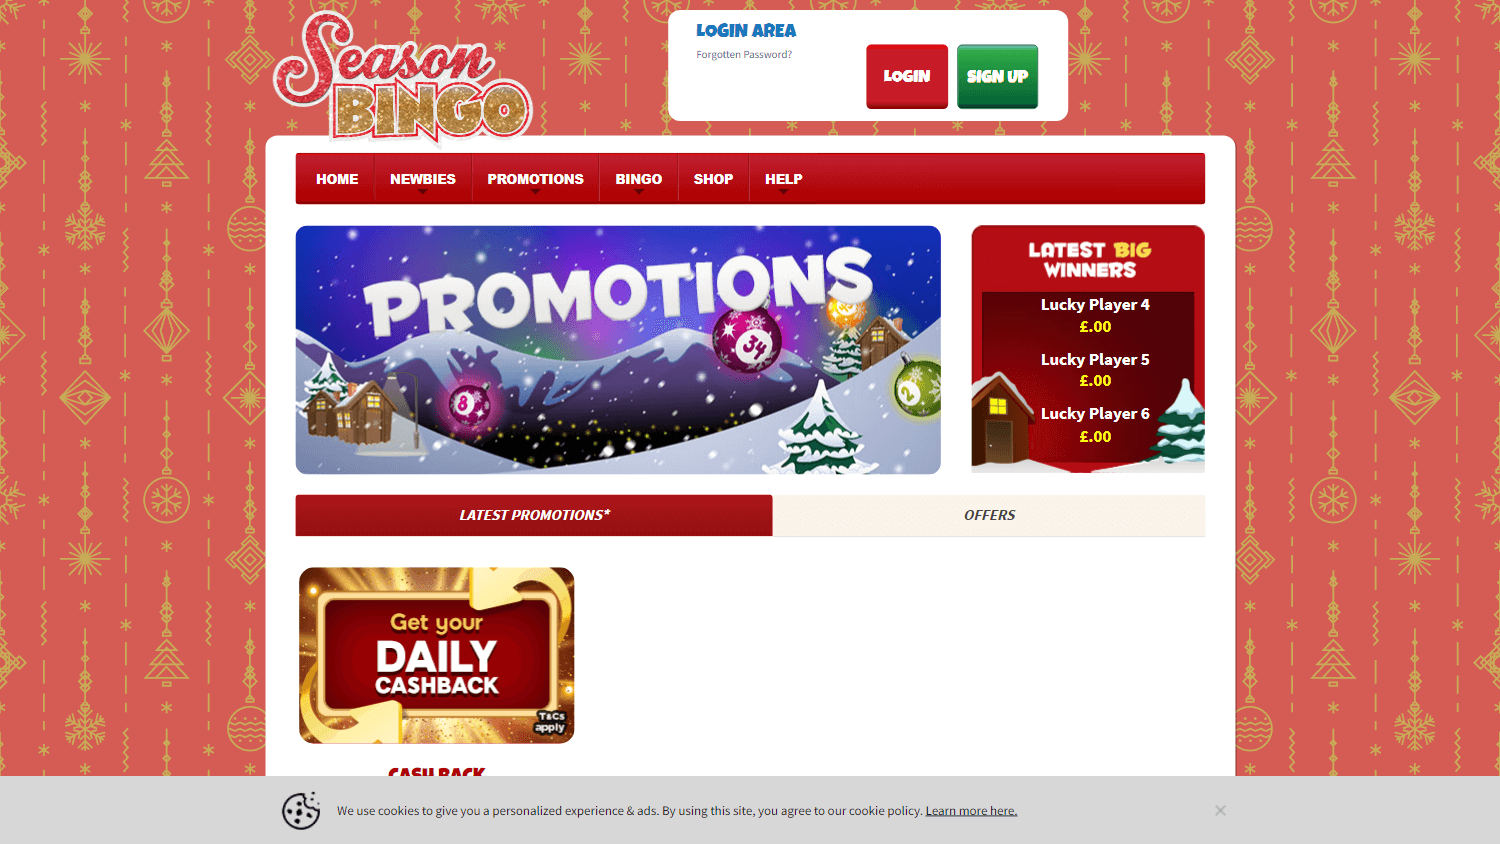 season_bingo_casino_promotions_desktop